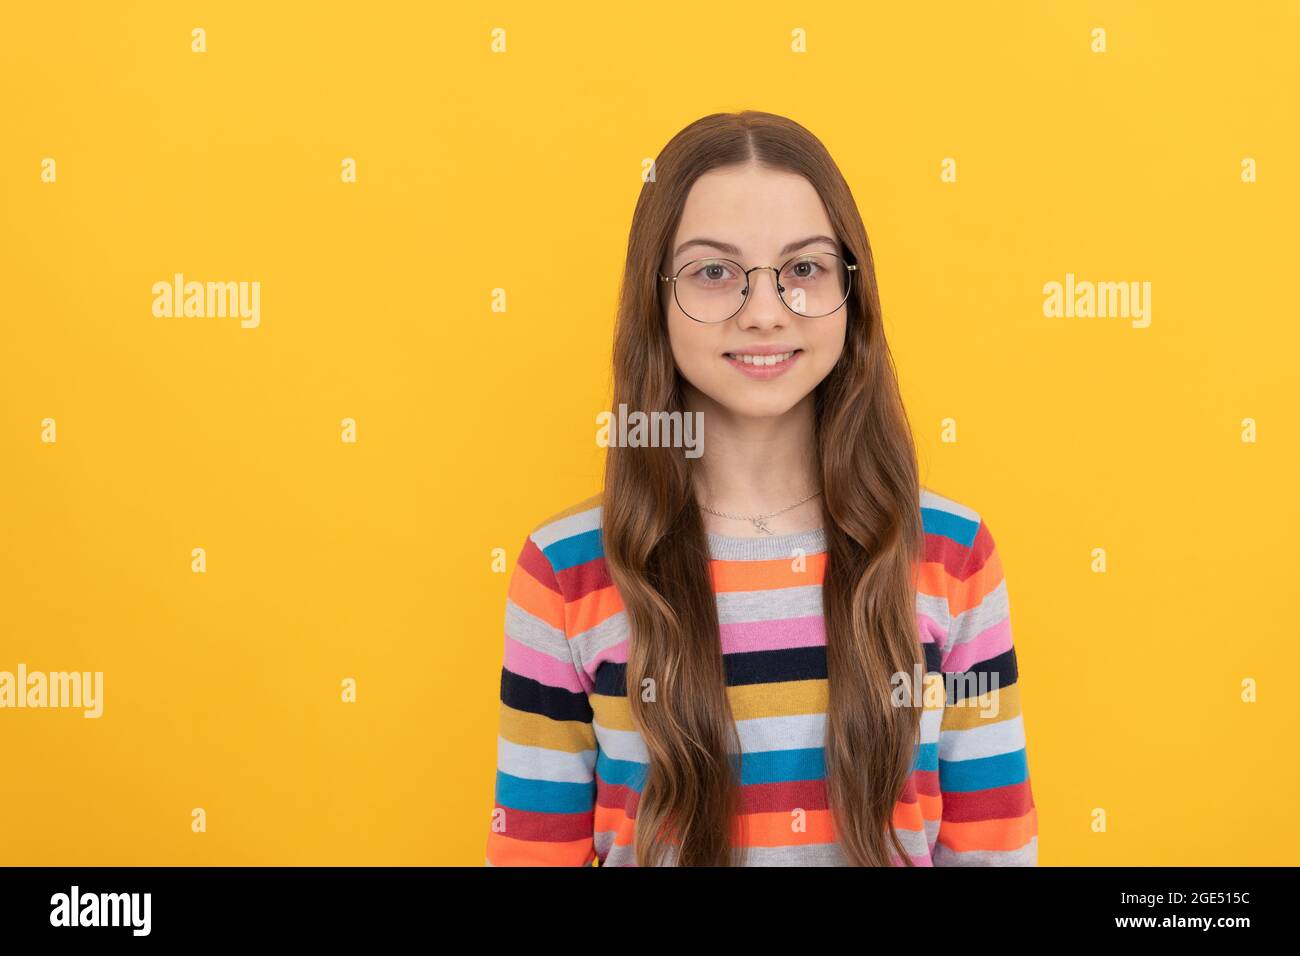 smiling schoolgirl nerd child in eyeglasses for vision, school Stock Photo